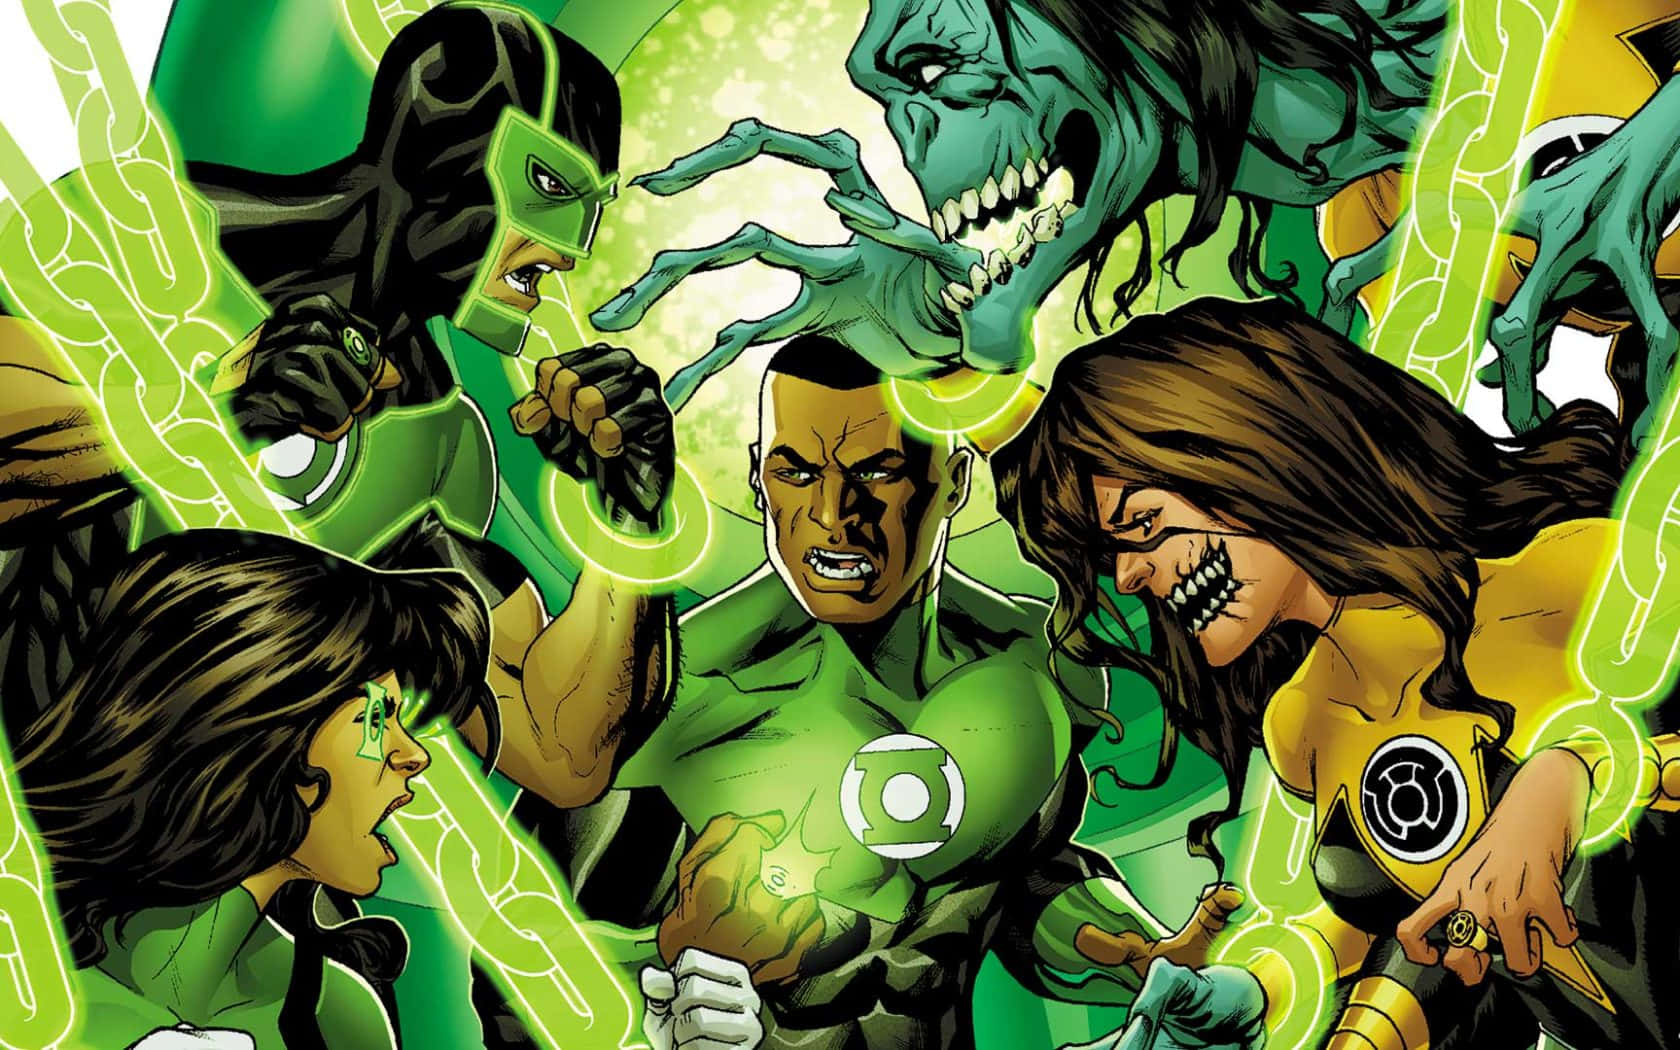 Hintergrundbildvon Green Lantern